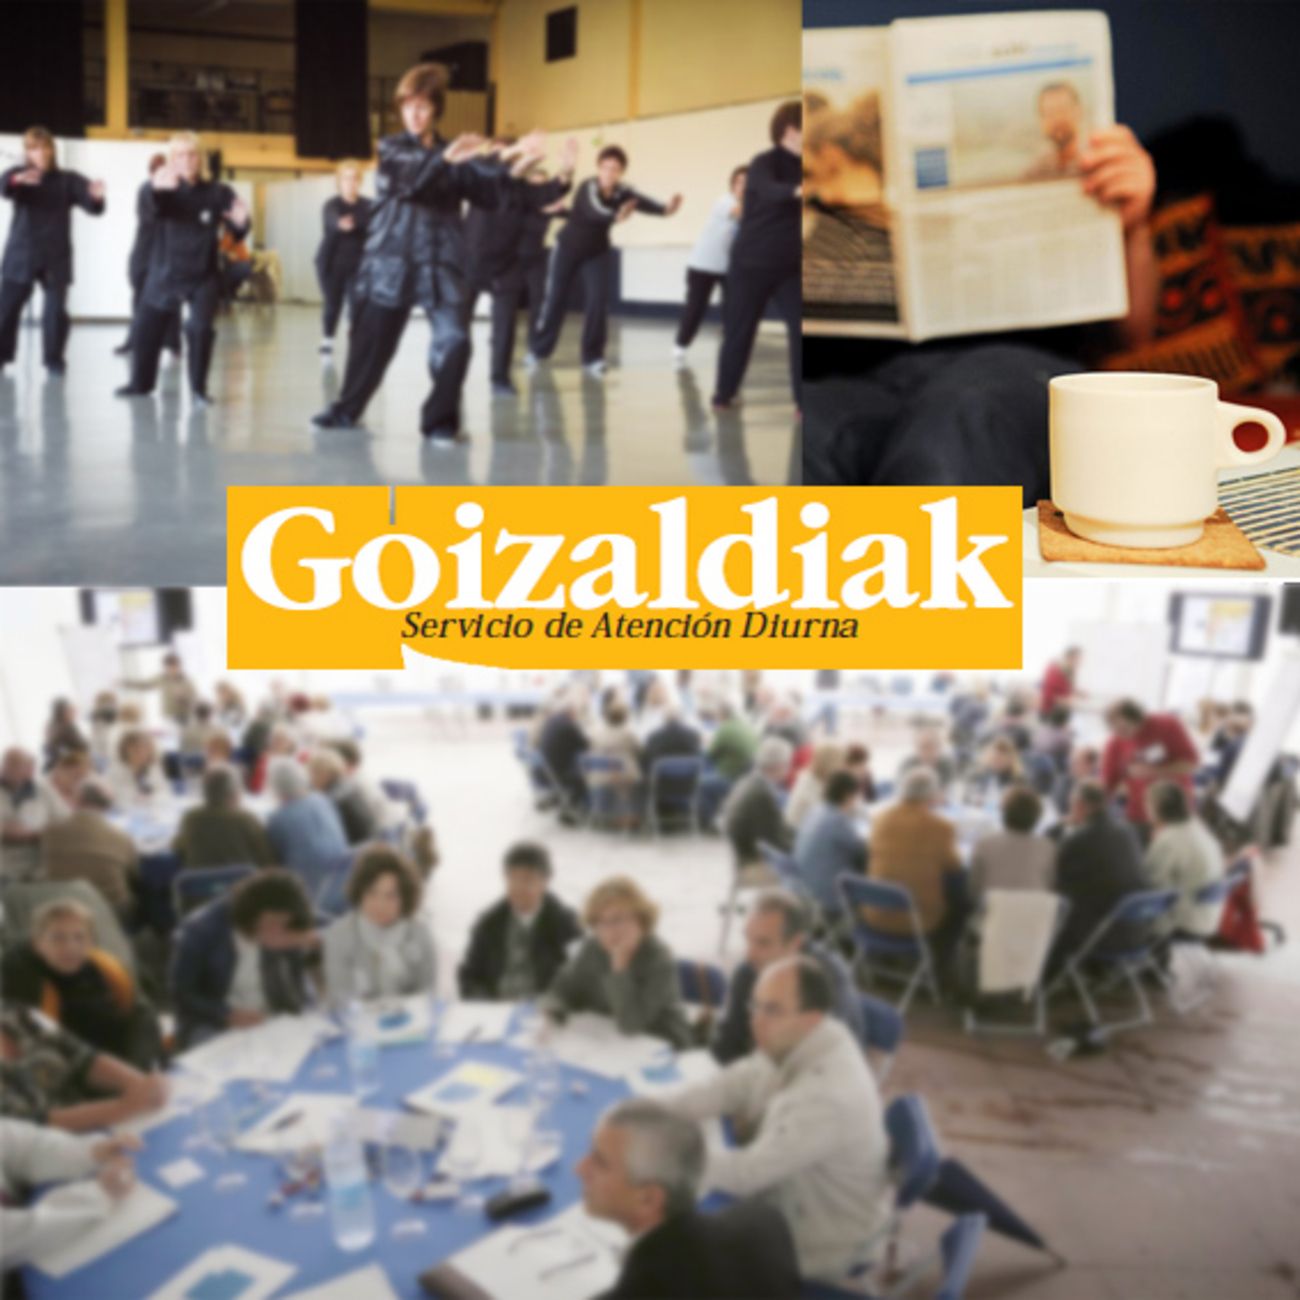 Goizaldiak, el servicio de atención diurna dirigido a personas mayores frágiles y autónomas